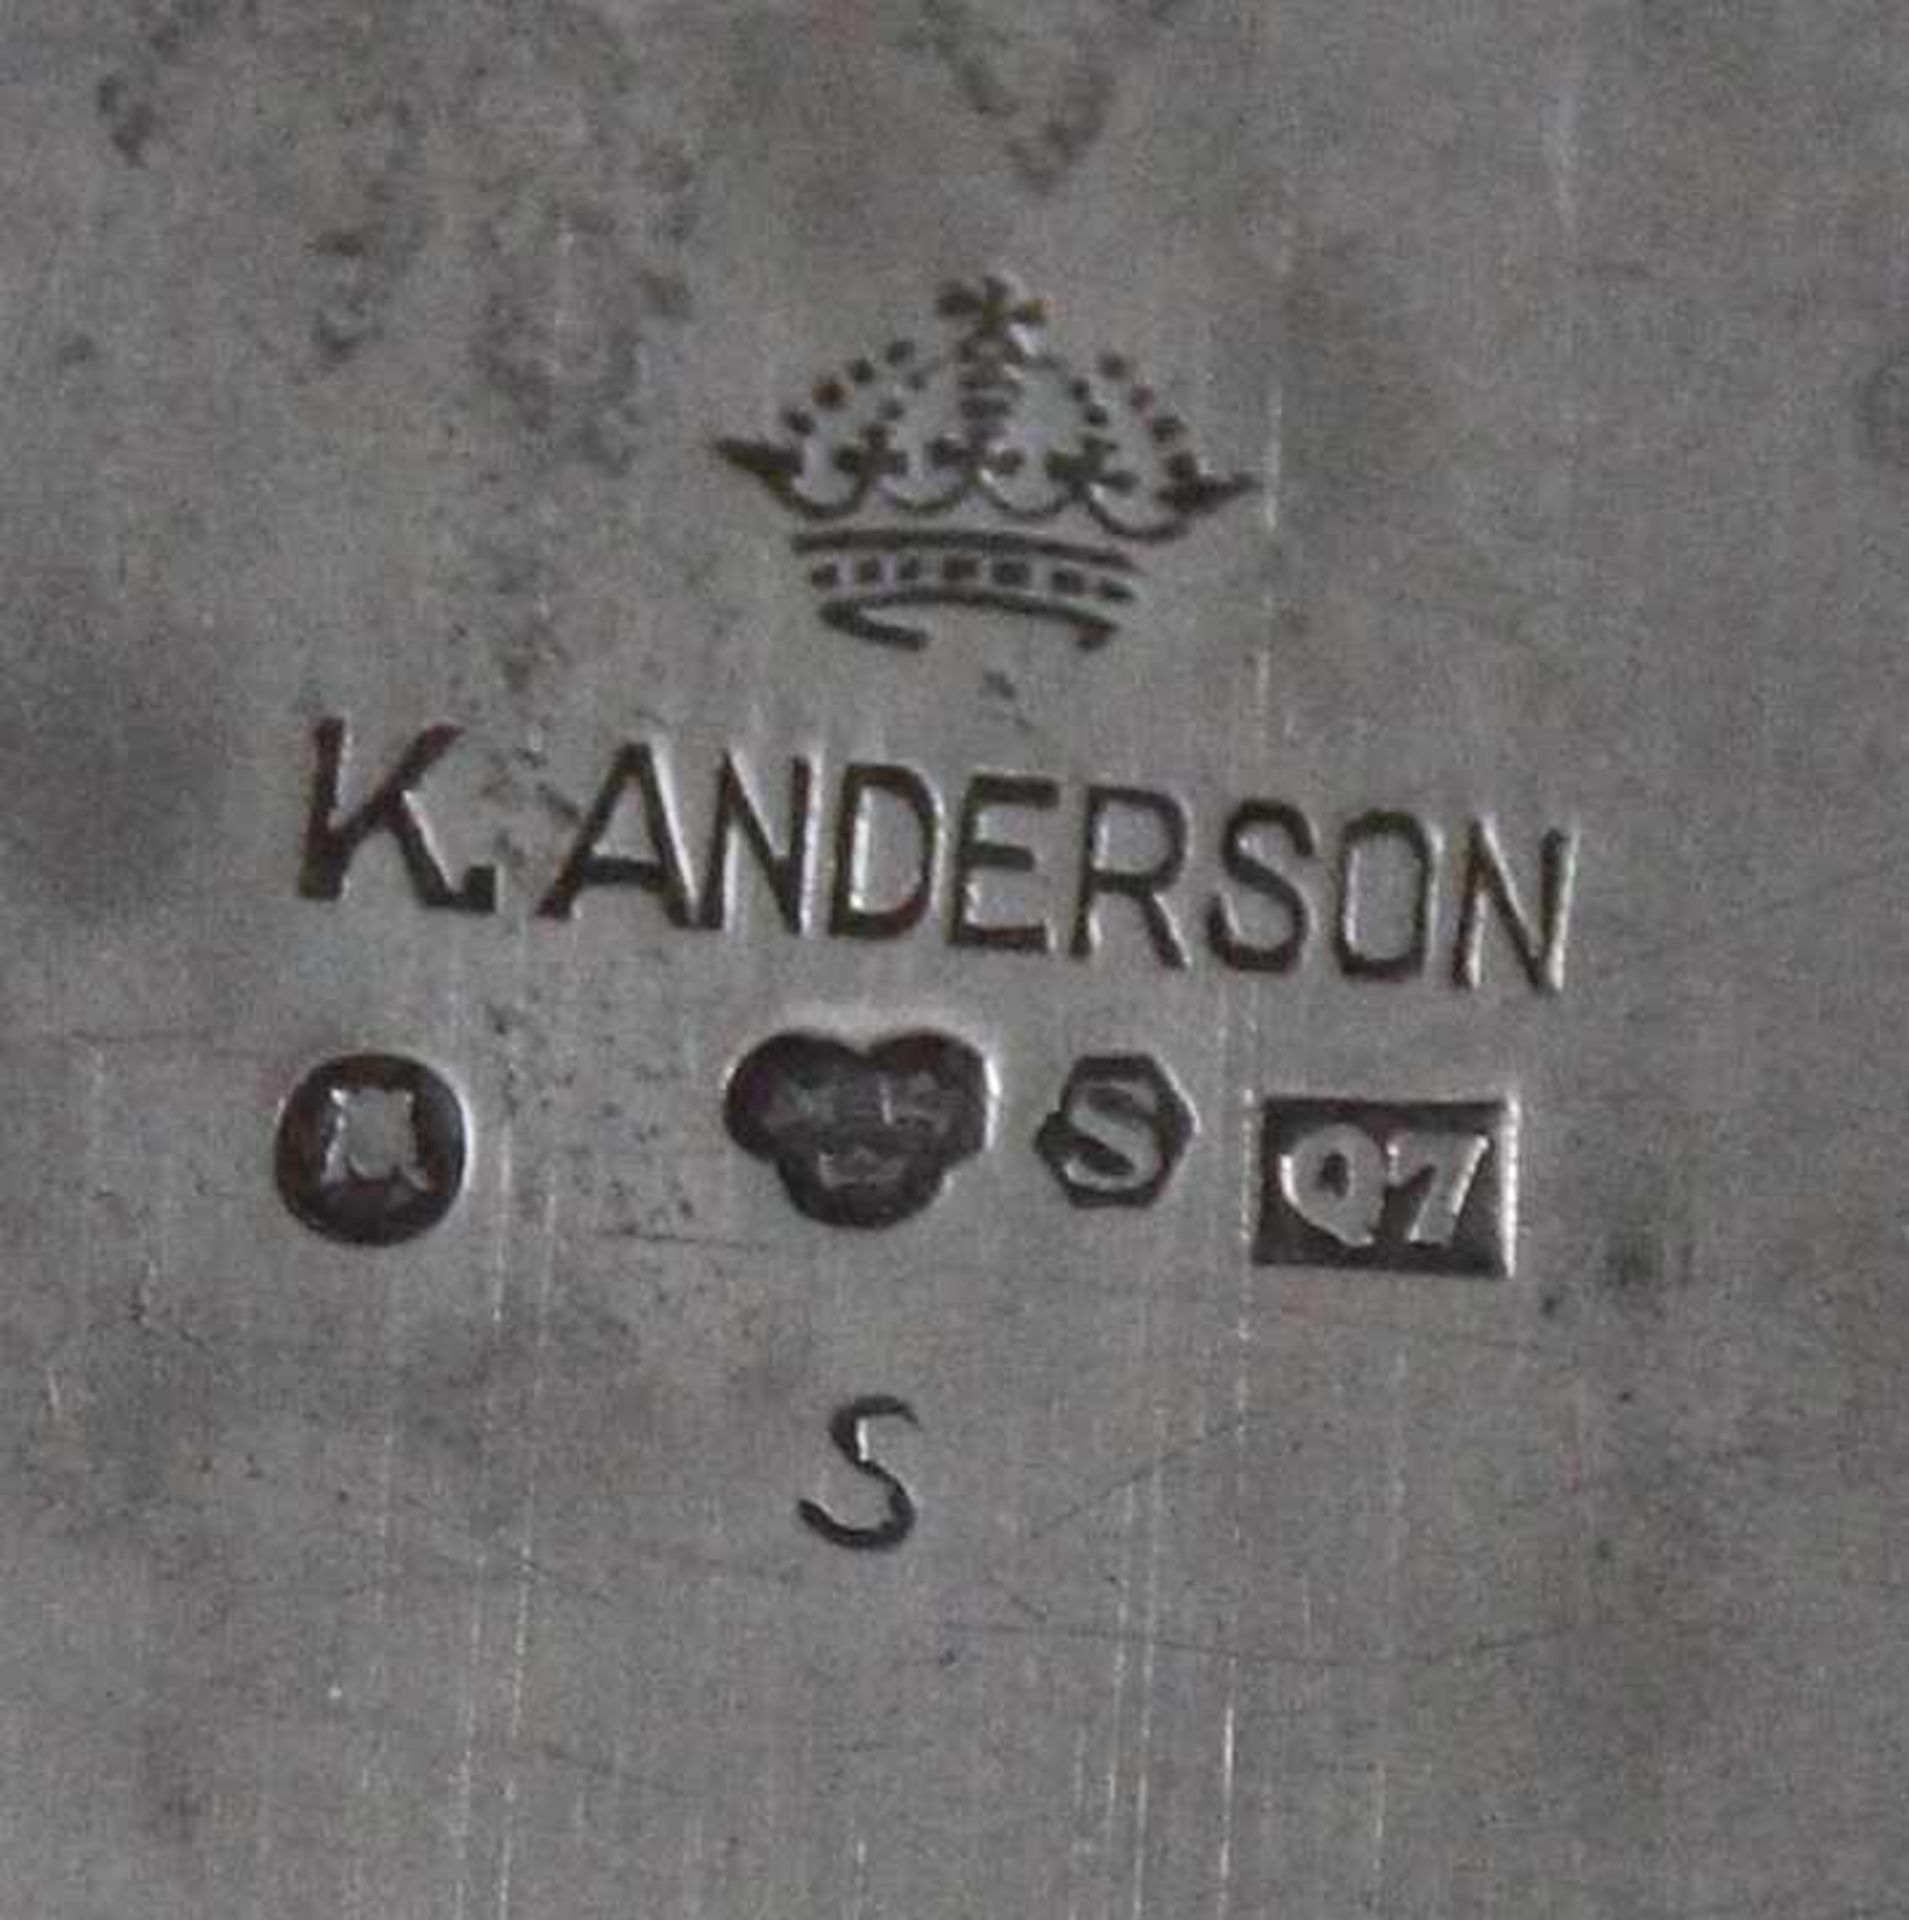 3 tlg. Art Deco Schreibganitur, 830er Silber des schwedischen Hofjuweliers K. Anderson, Stockholm, - Bild 2 aus 2